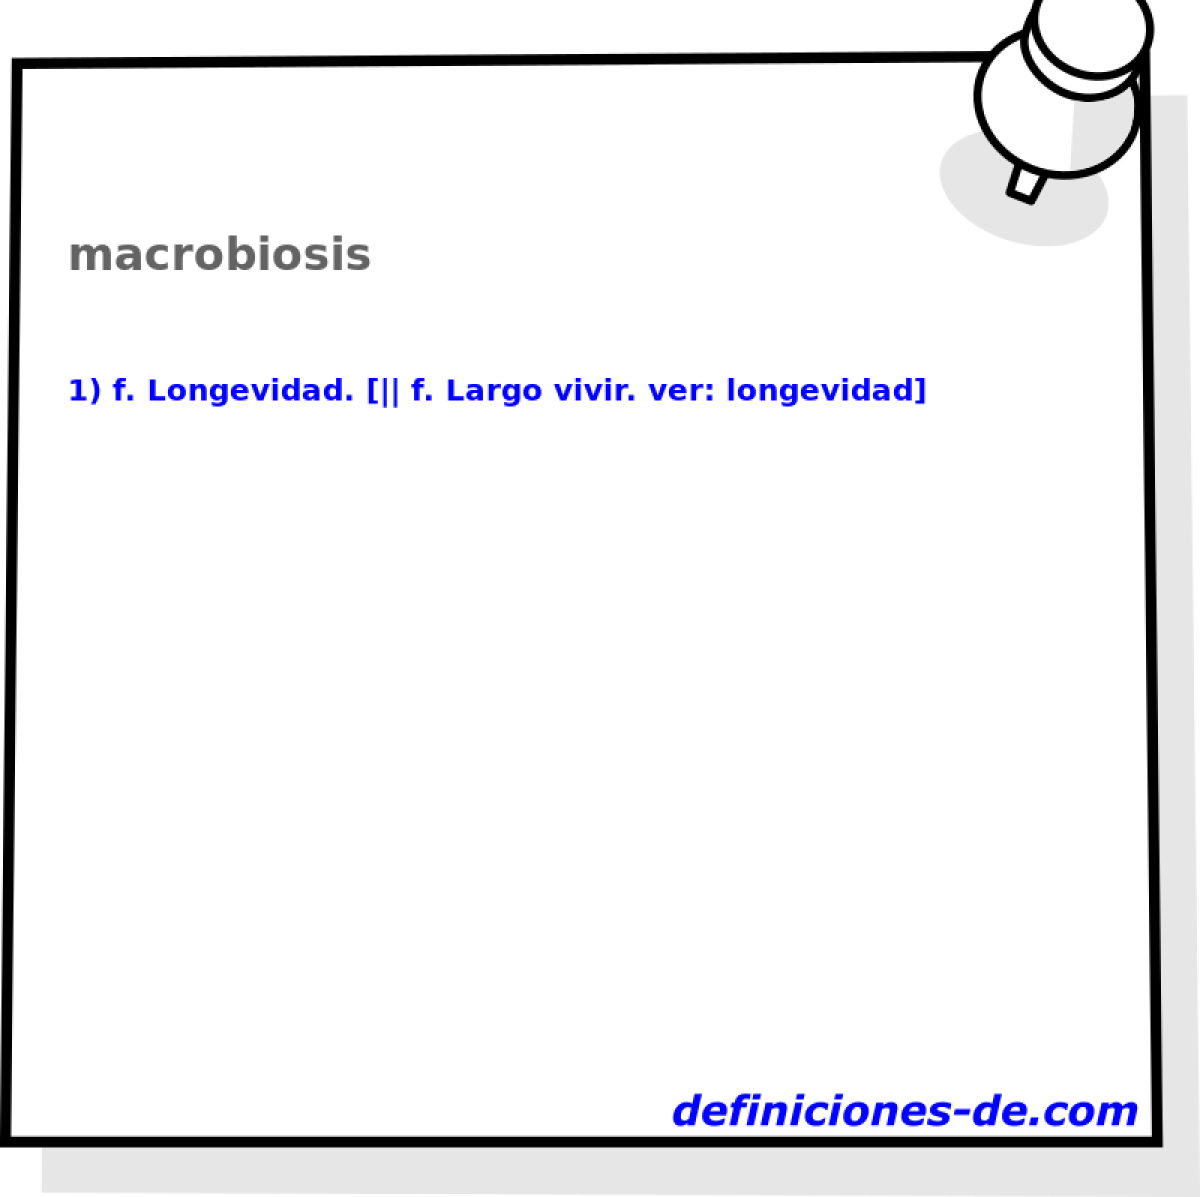 macrobiosis 